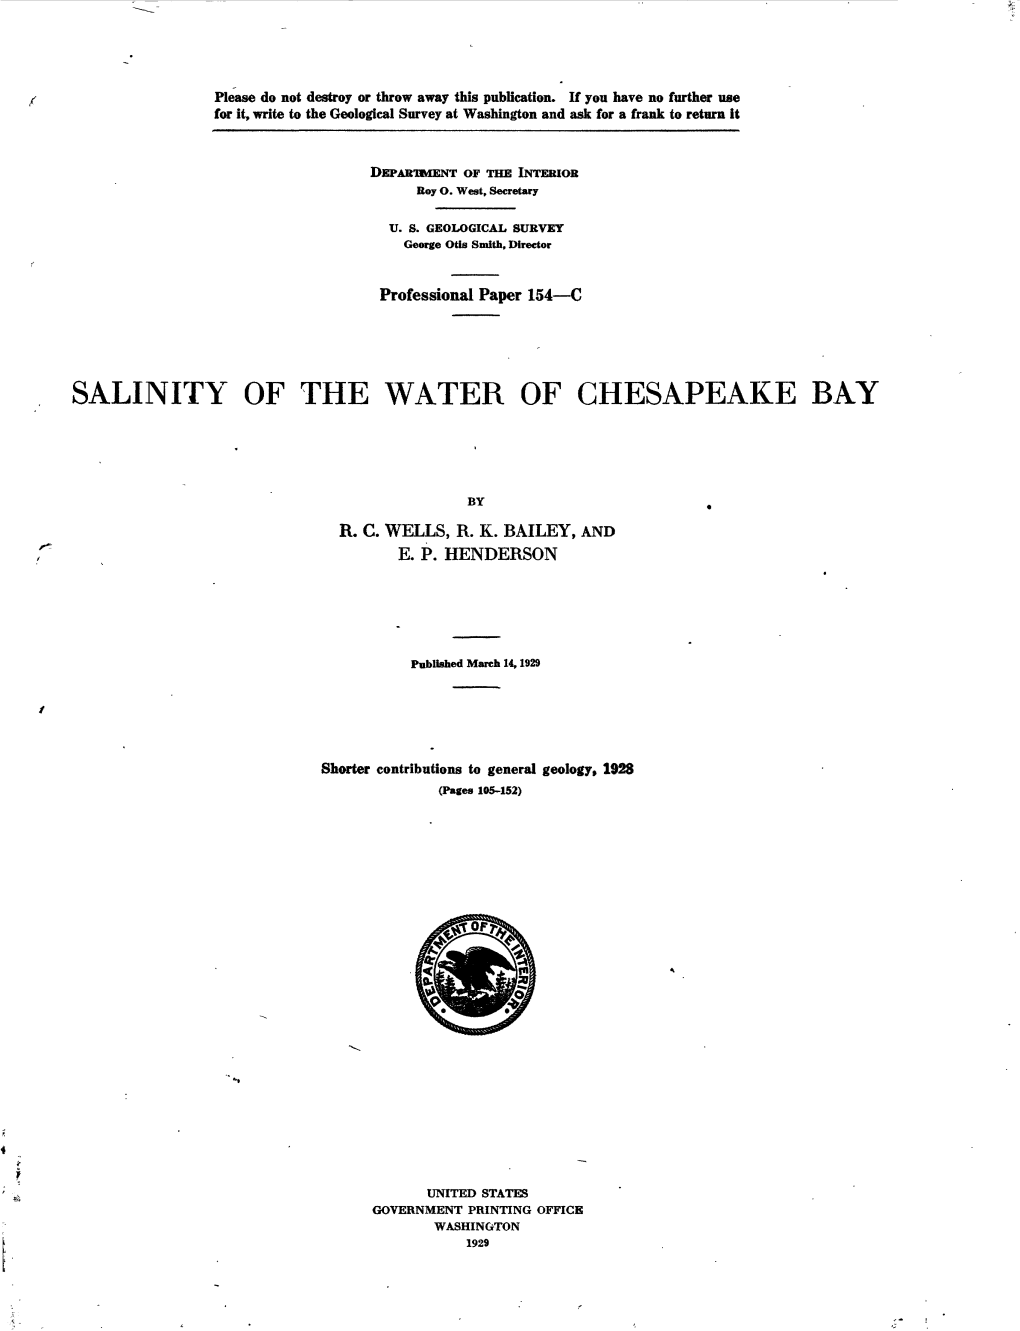 Salinity of the Water of Chesapeake Bay